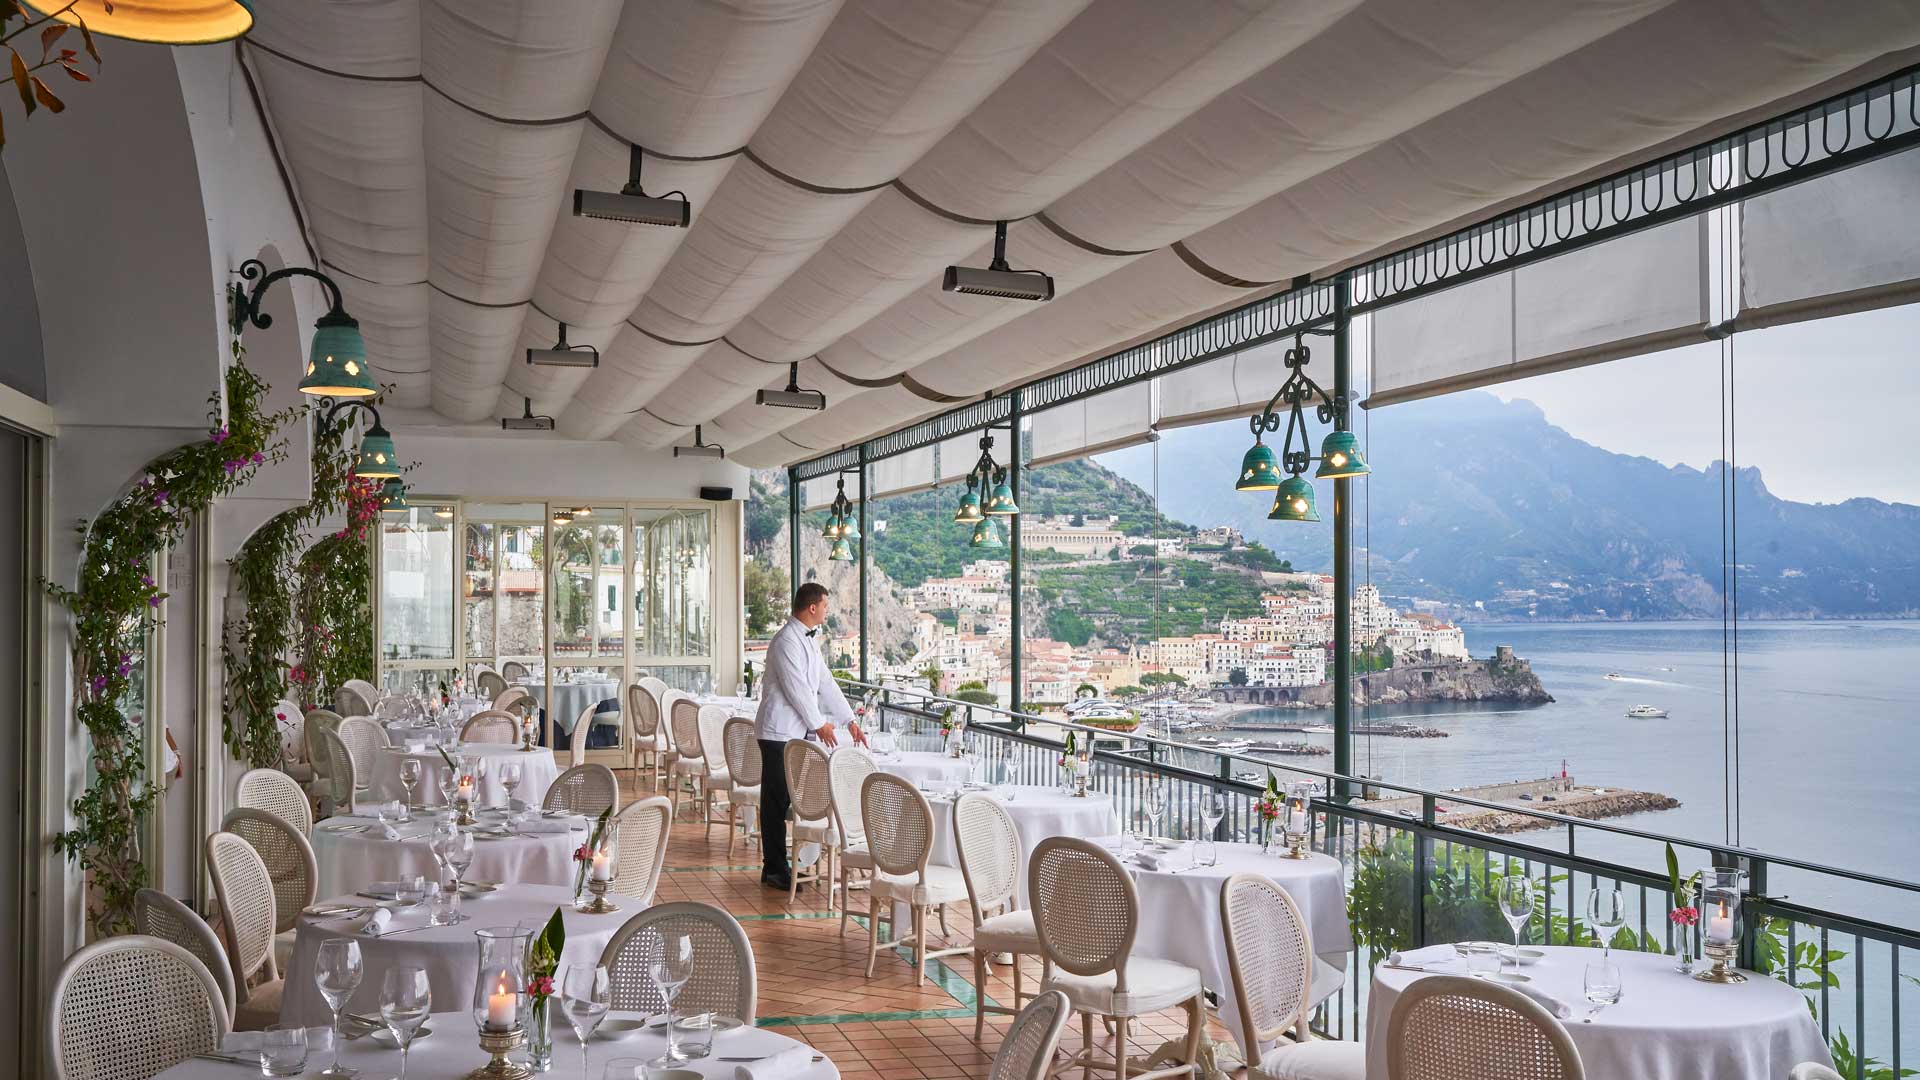 Terrazza-ristorante-stellato-glicine-amalfi-robb-report-italia